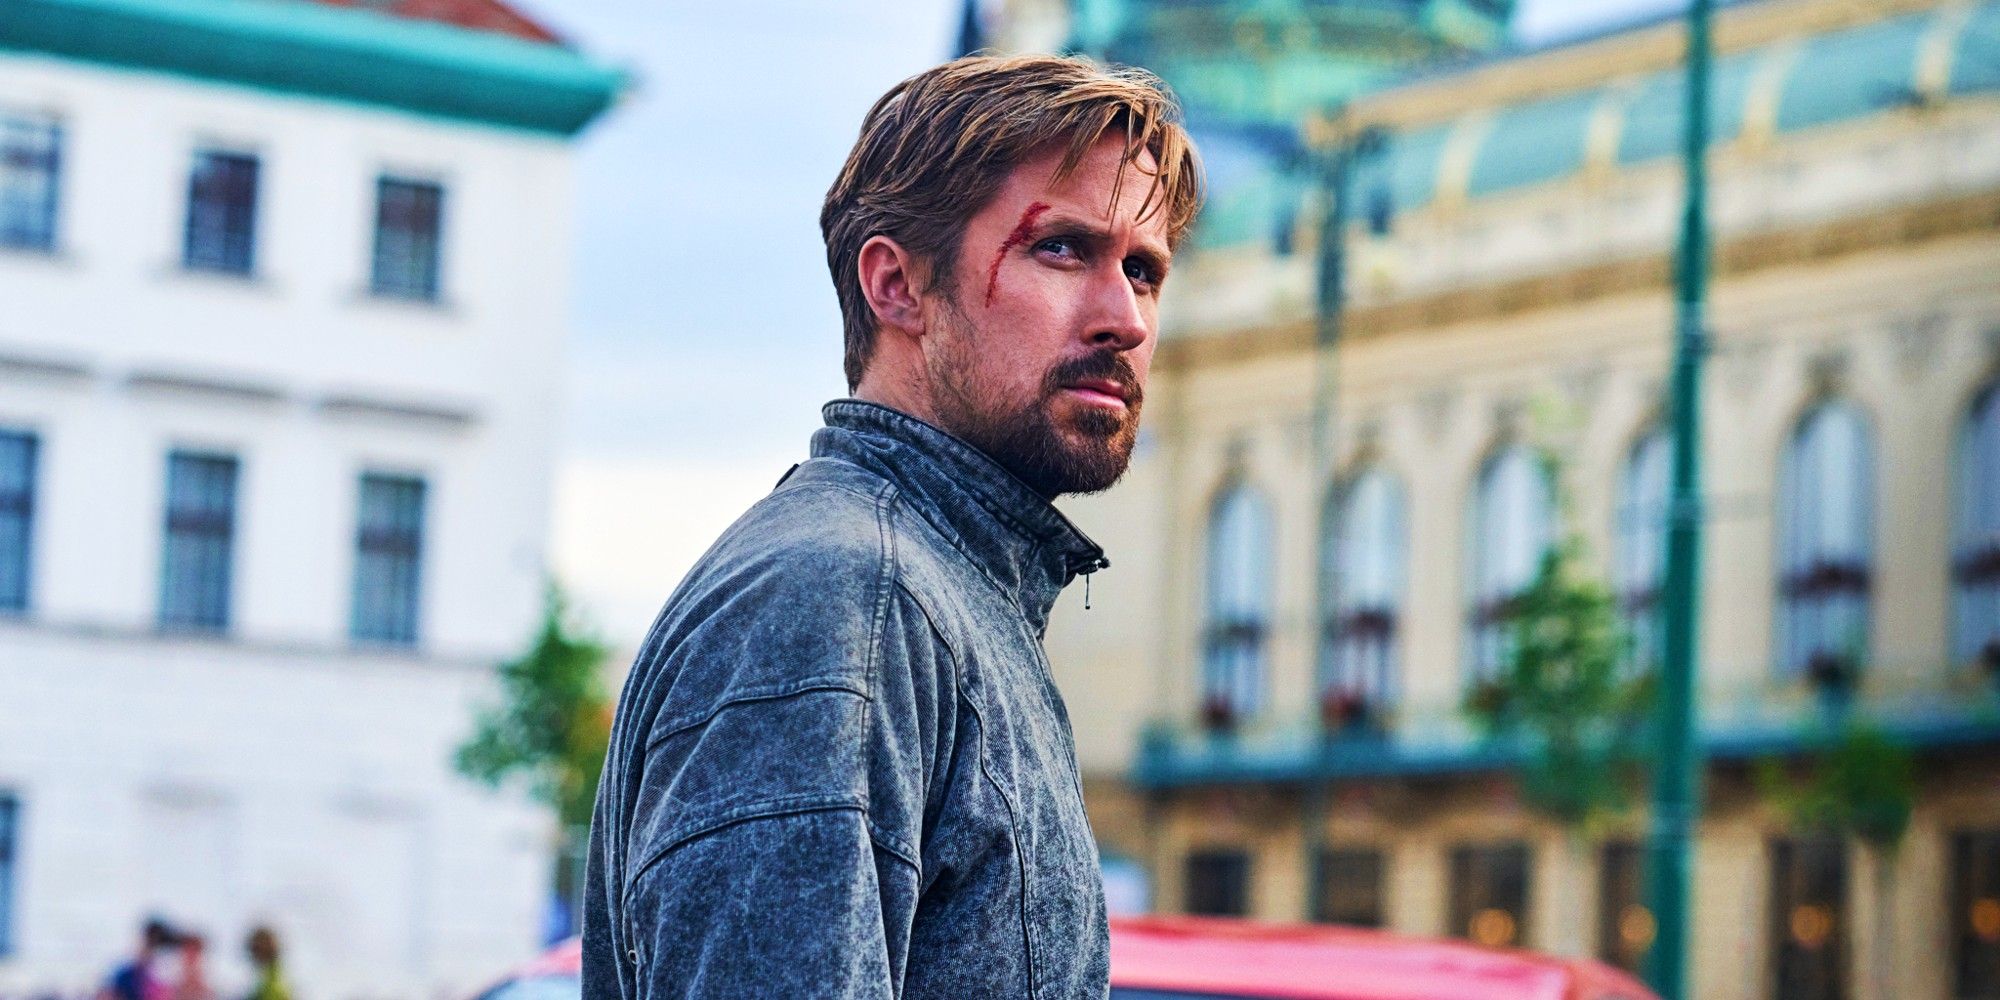 The Grey Man Review: Gosling y Evans entregan un inicio de franquicia de acción divertida